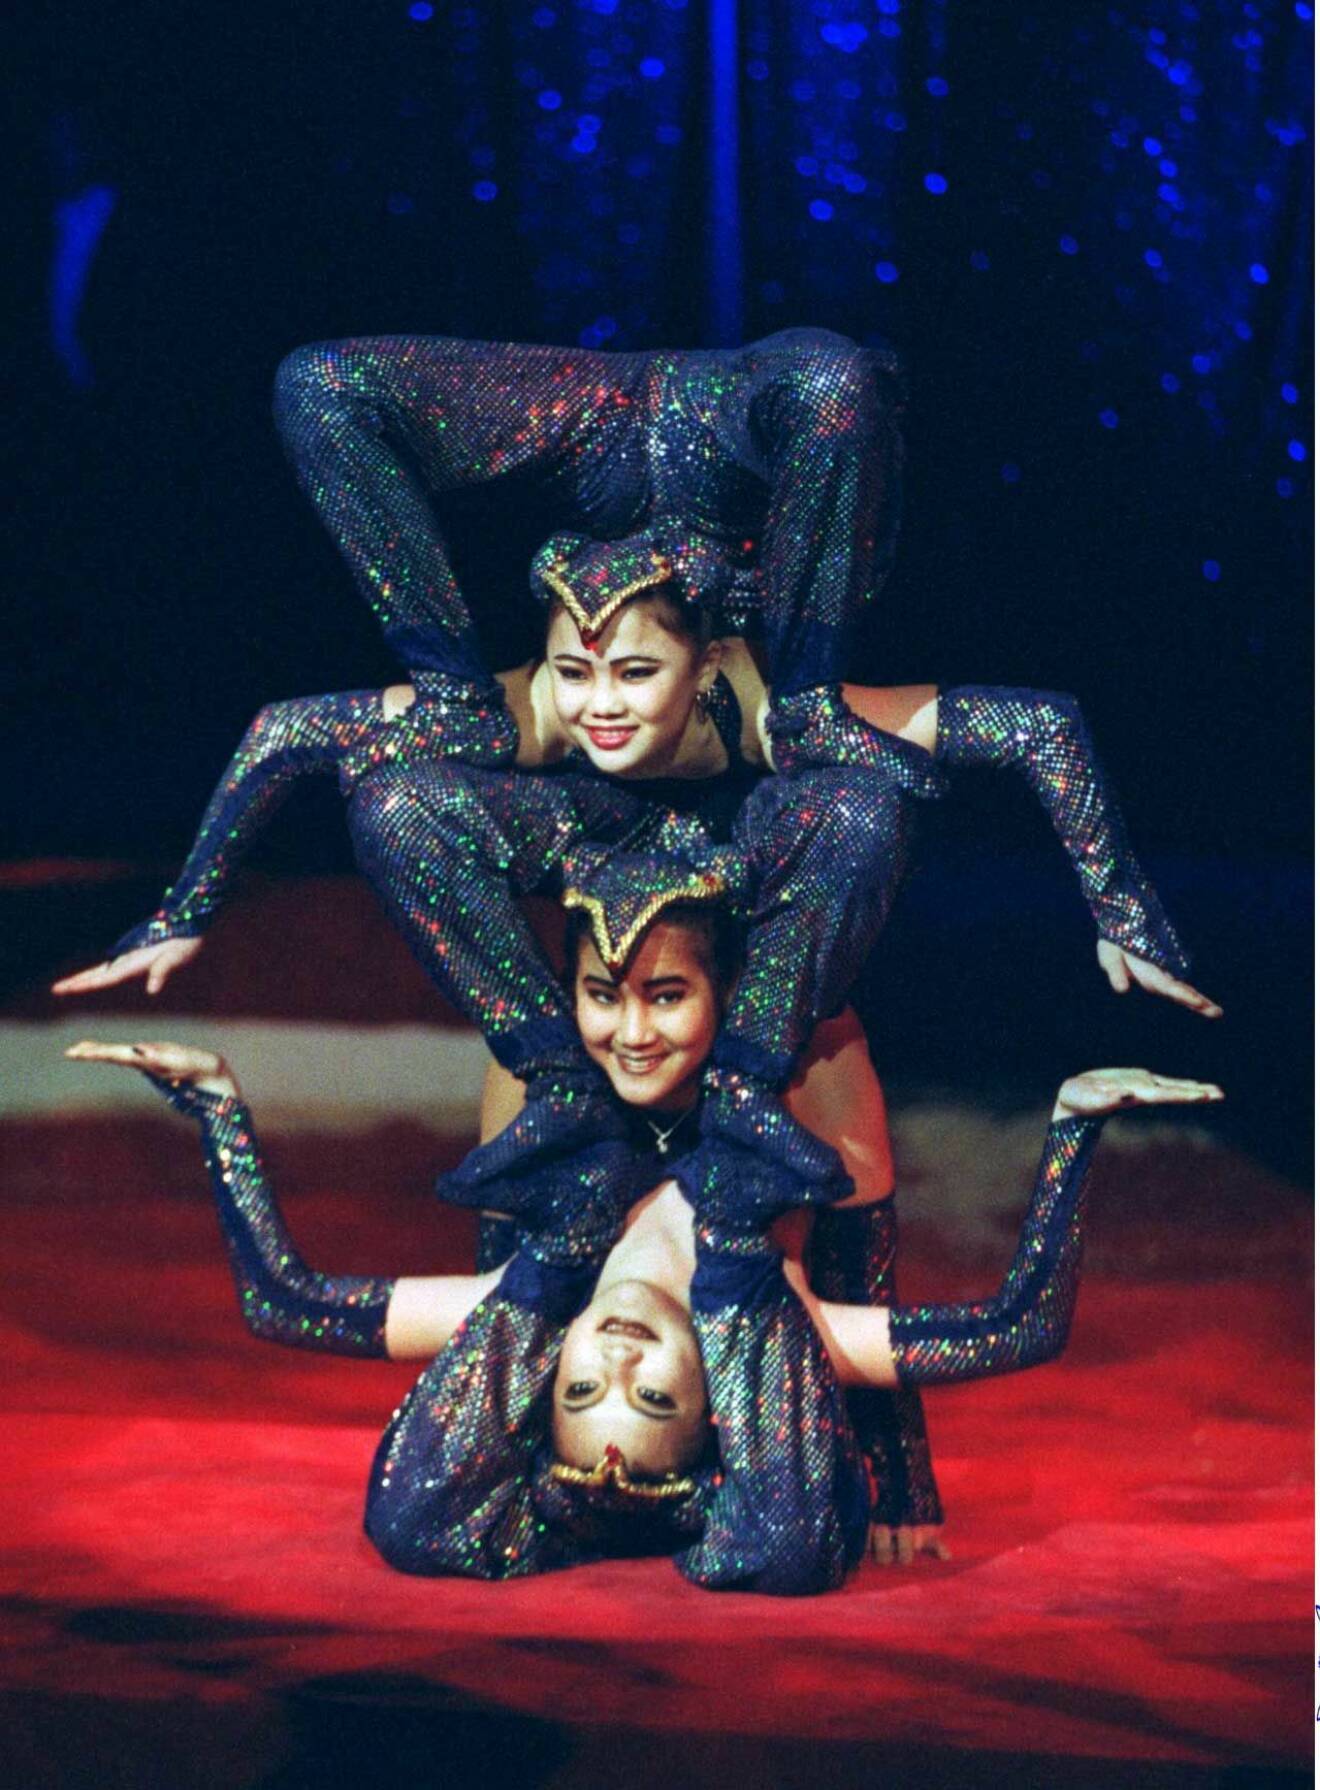 Akrobatik på hög nivå! På den här tiden var cirkus oerhört populärt och biljetterna sålde slut i ett nafs. 